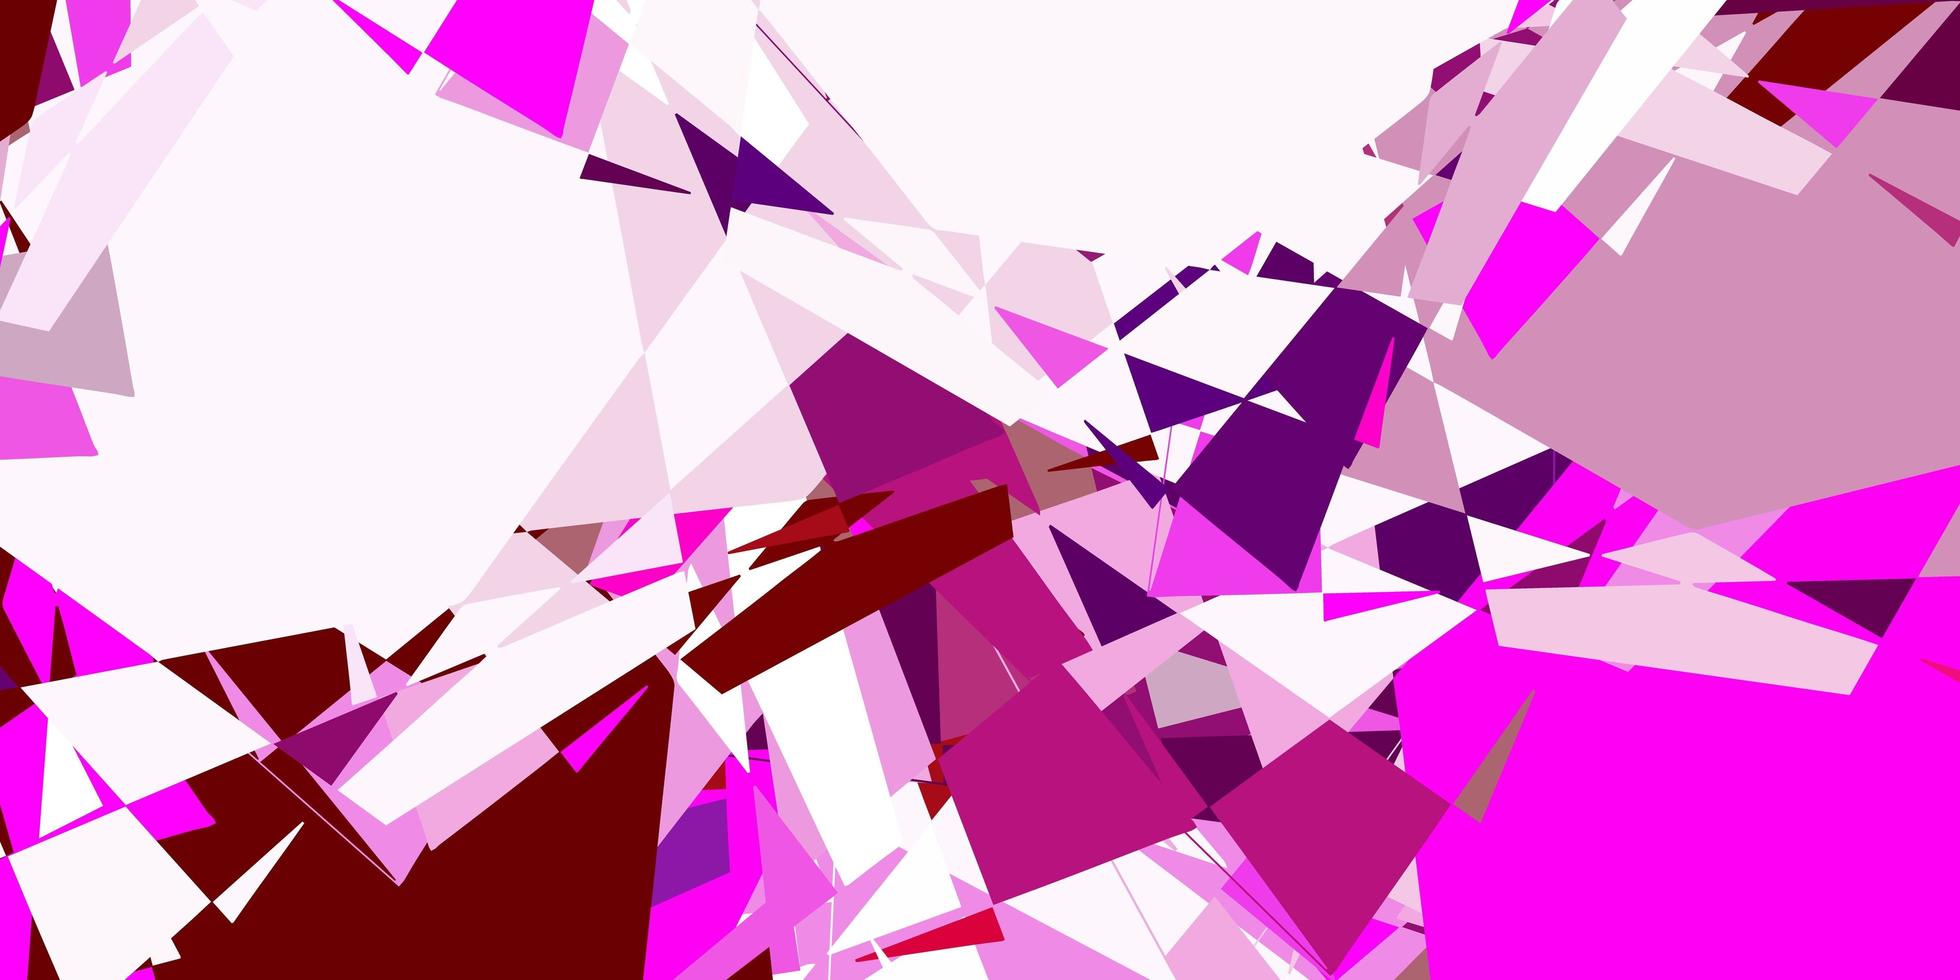 trama vettoriale rosa chiaro con triangoli casuali